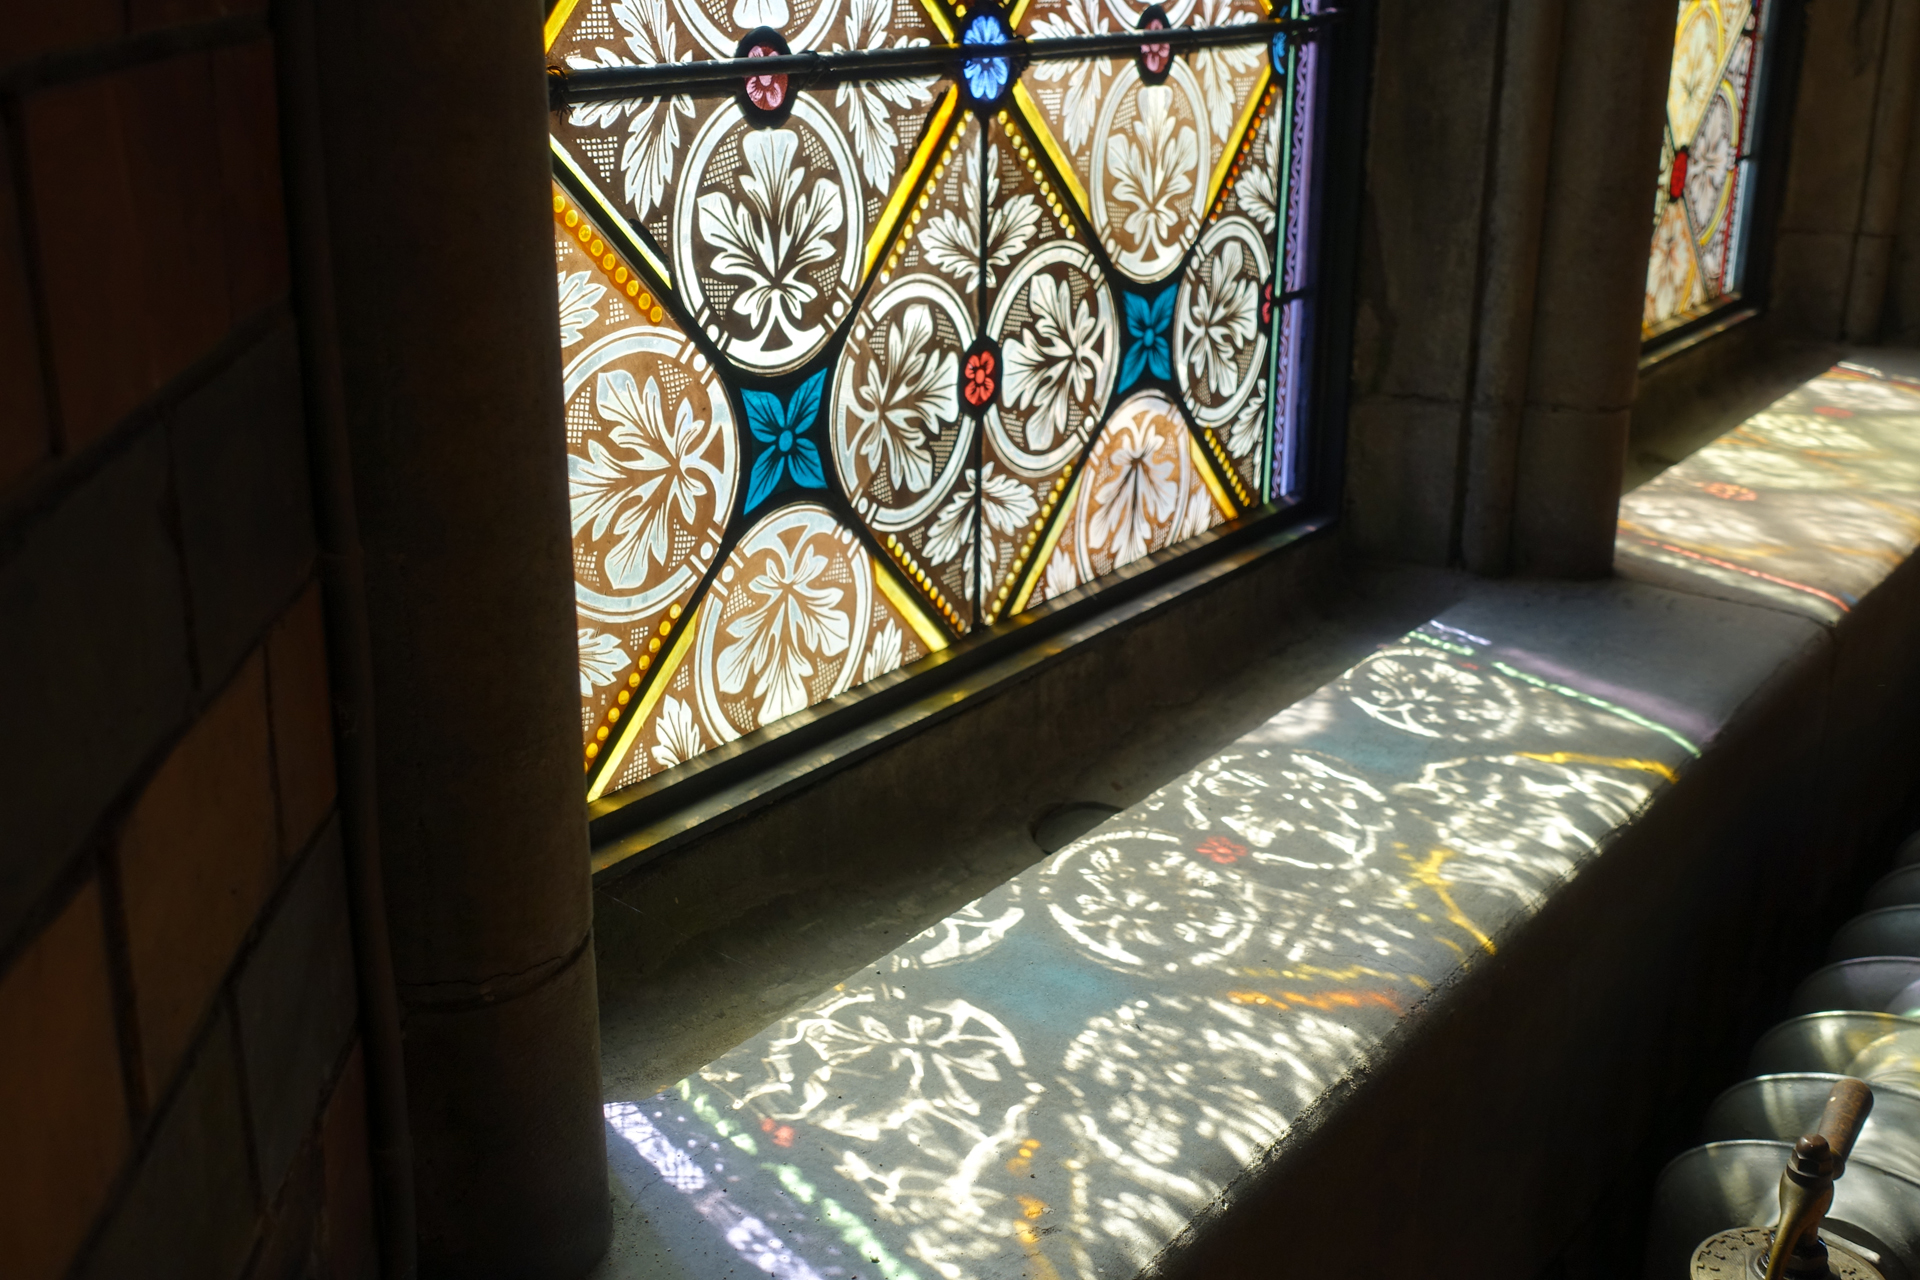 Bild på glasfönster där solen lyser in och reflekterar mönstret på fönsterbrädan